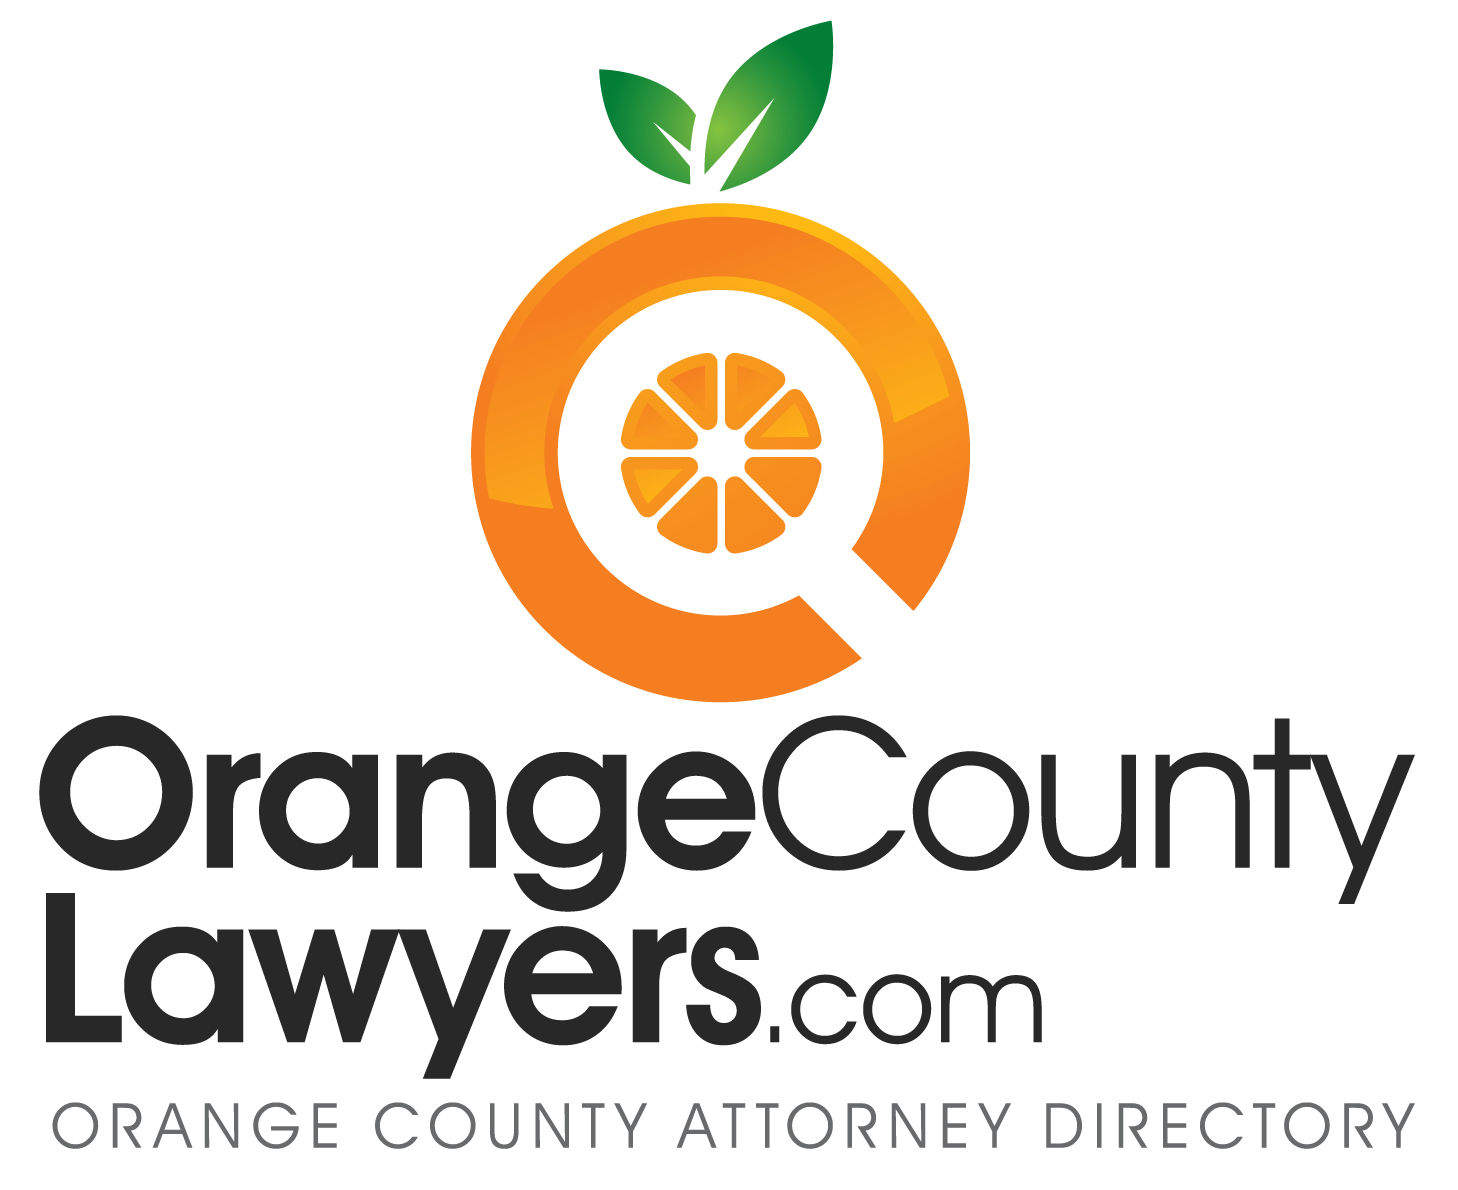 OrangeCountyLawyers.com